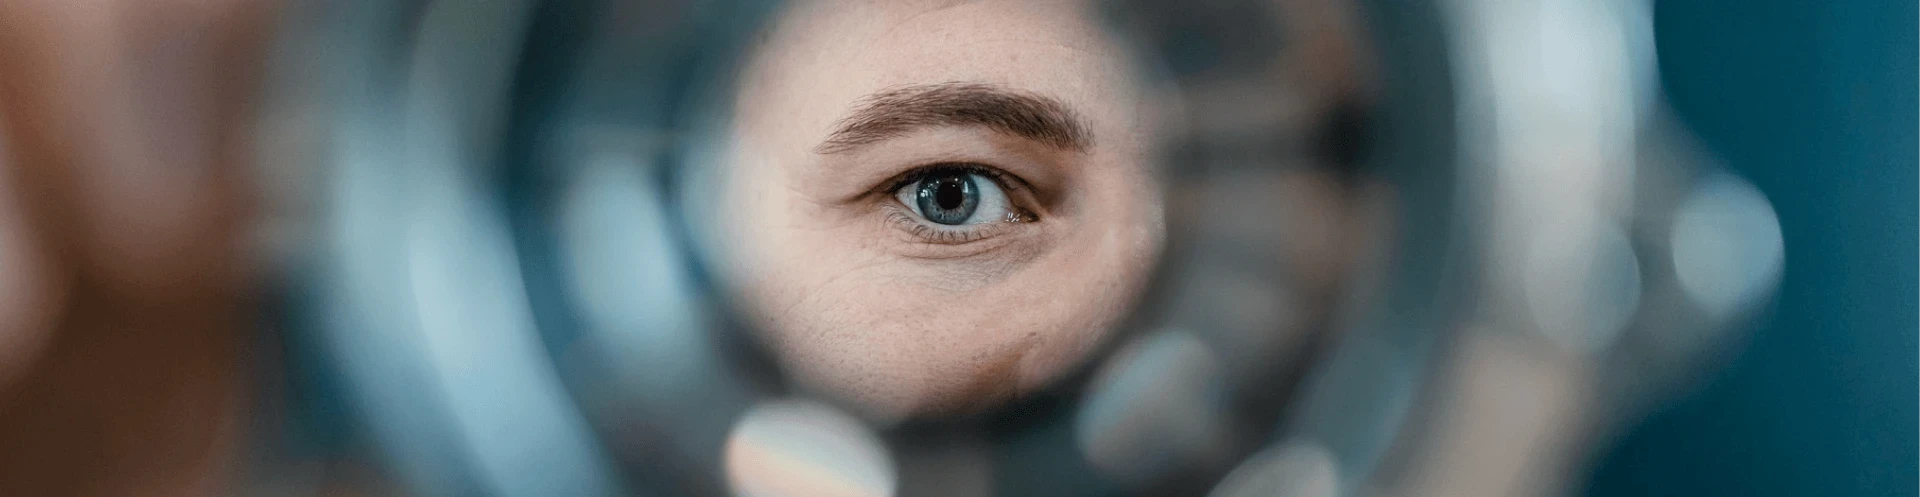 A blue eye viewed through a circular magnifier.